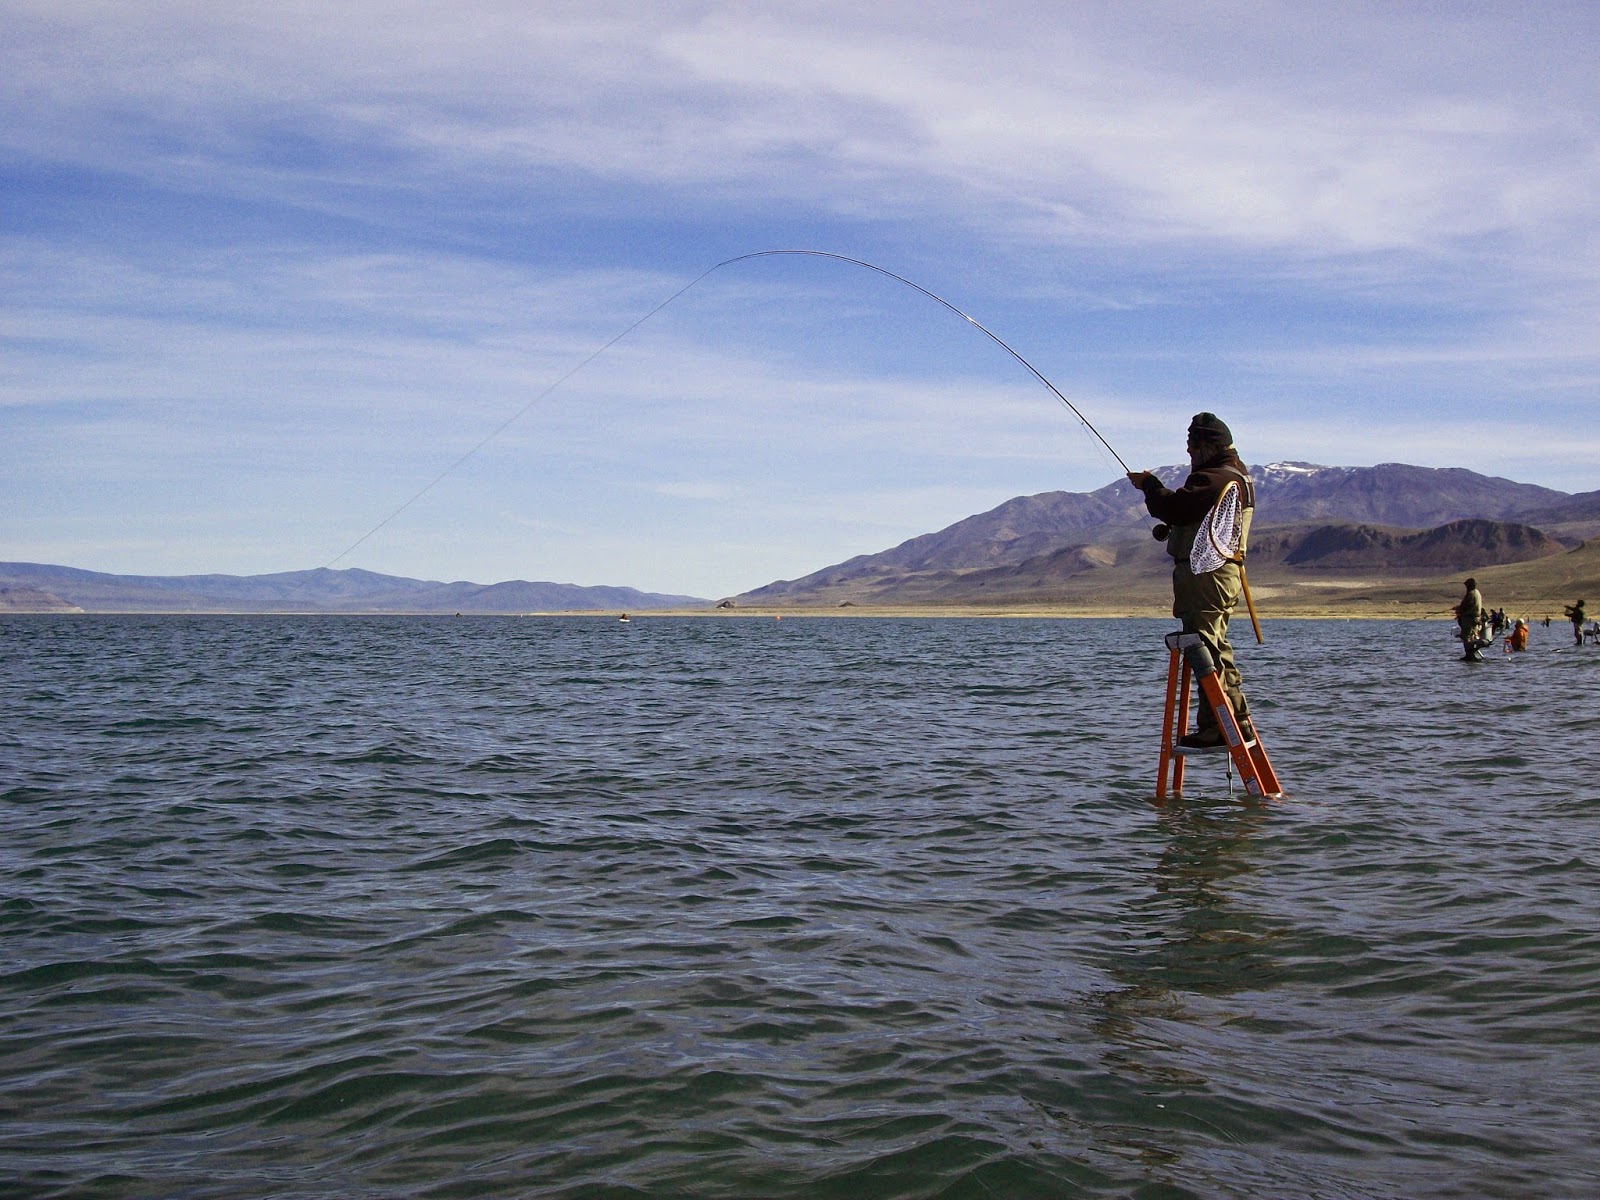 Jon Baiocchi Fly Fishing News: Spring Madness at Pyramid Lake